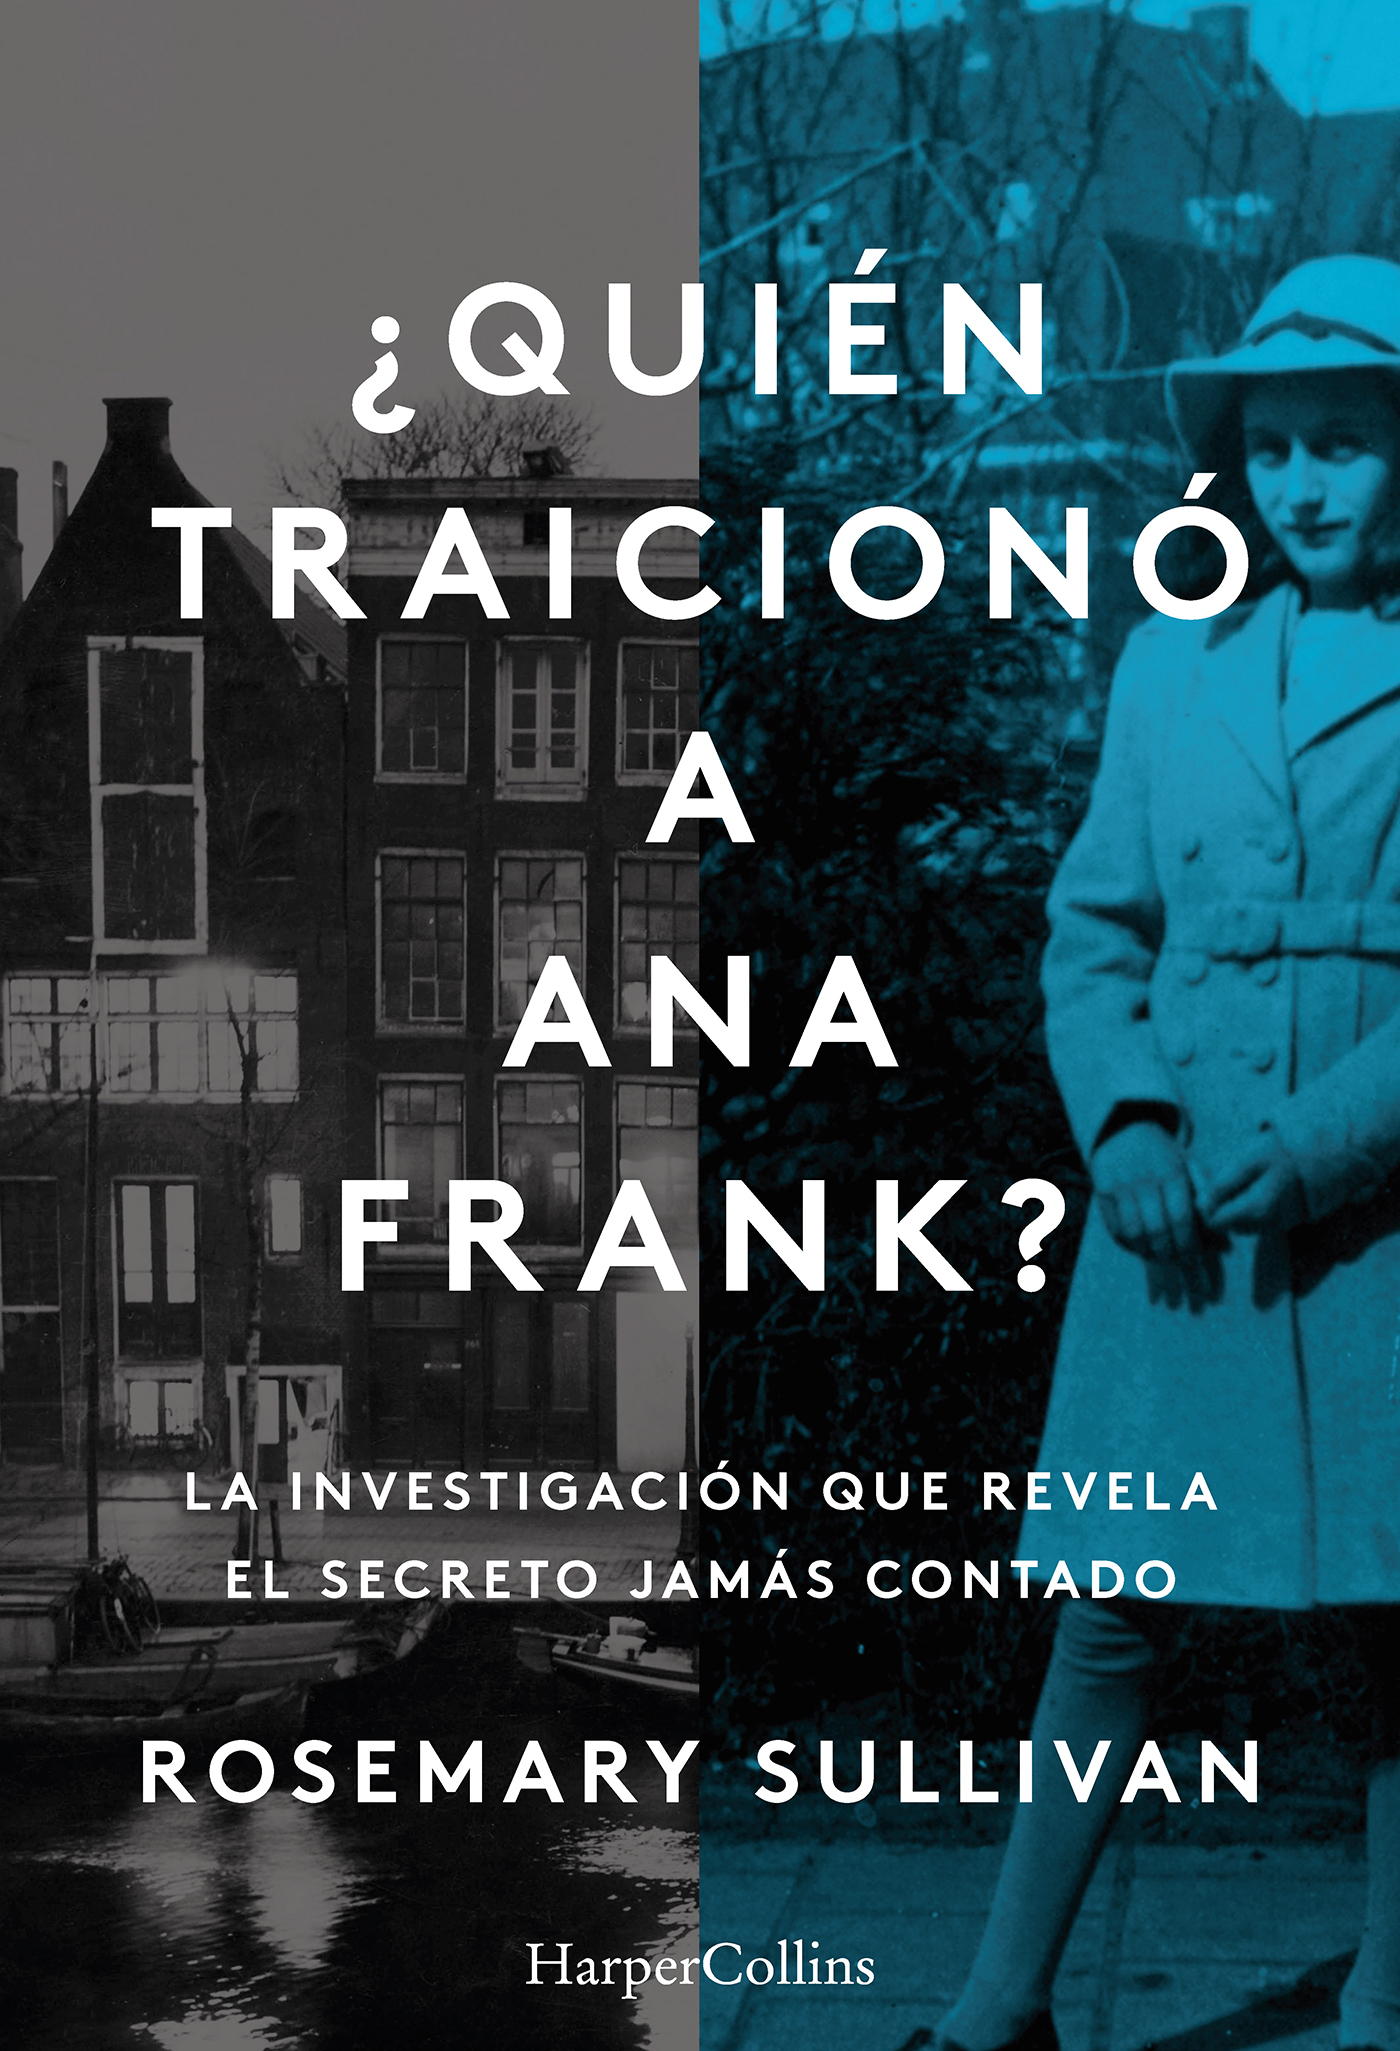 ¿Quién traicionó a Anna Frank?